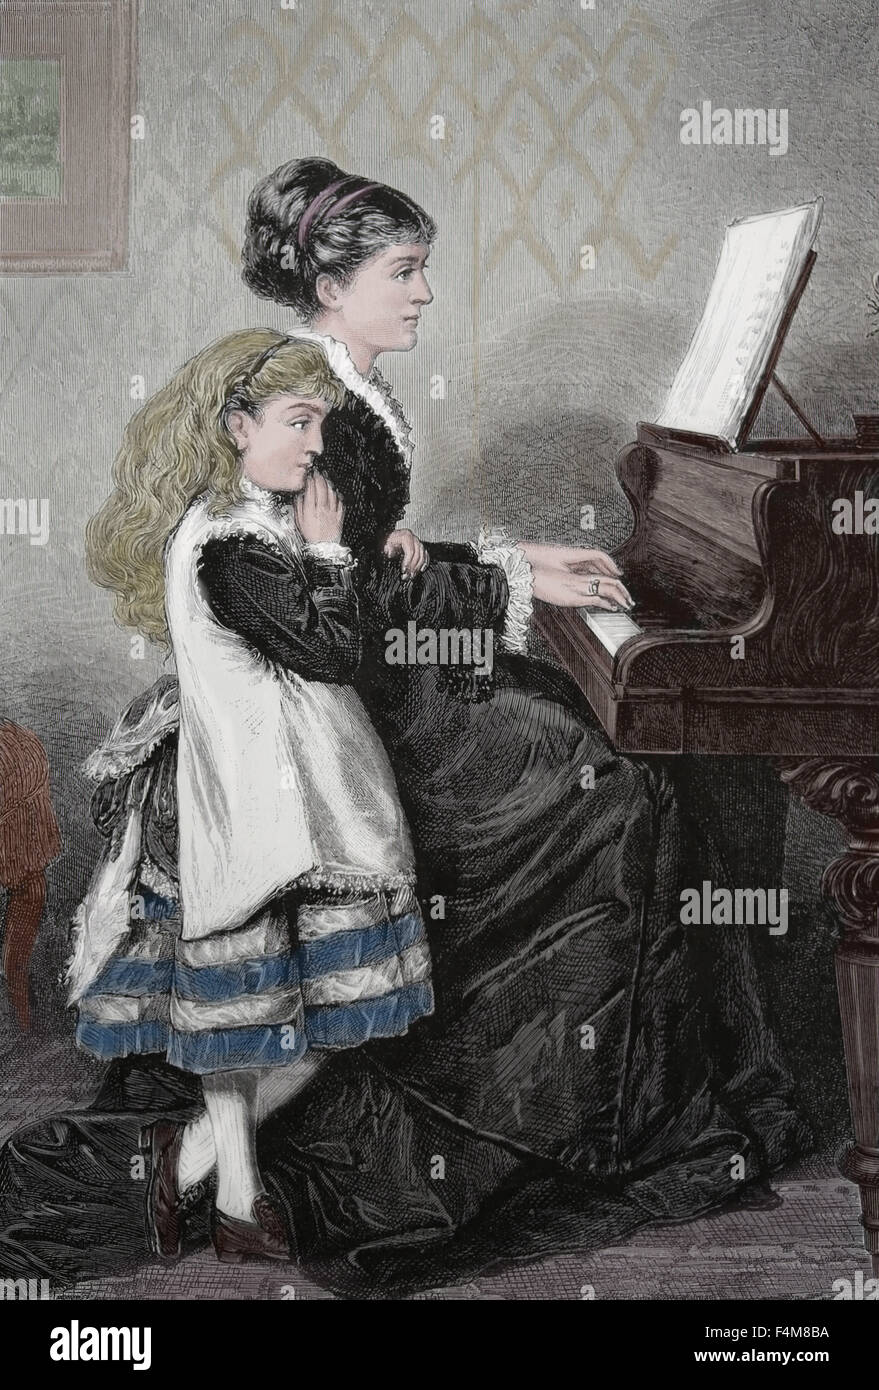 Klaviermusik-Lektion. Mutter und Kind Klavier zu spielen. Gravur. des 19. Jahrhunderts. Farbe. Stockfoto